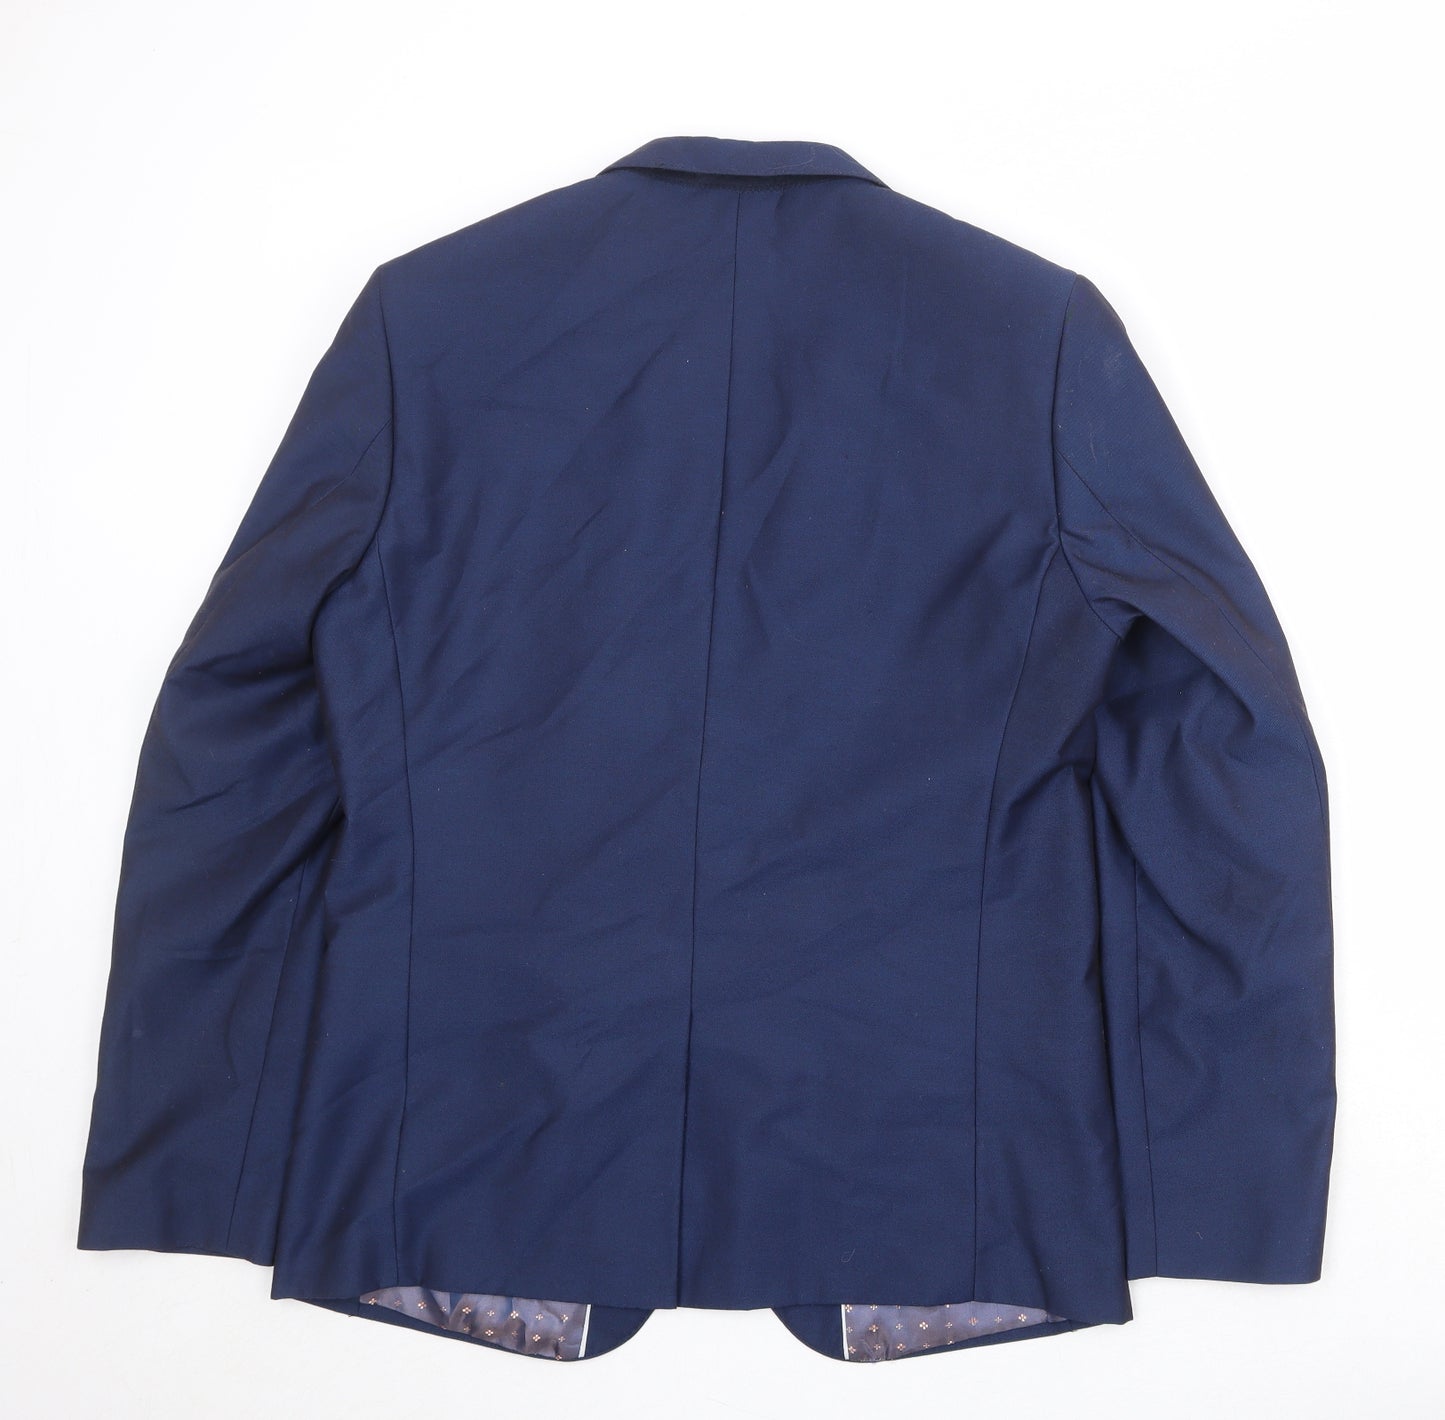 Cavani Mens Blue Polyester Jacket Suit Jacket Size 40 Regular